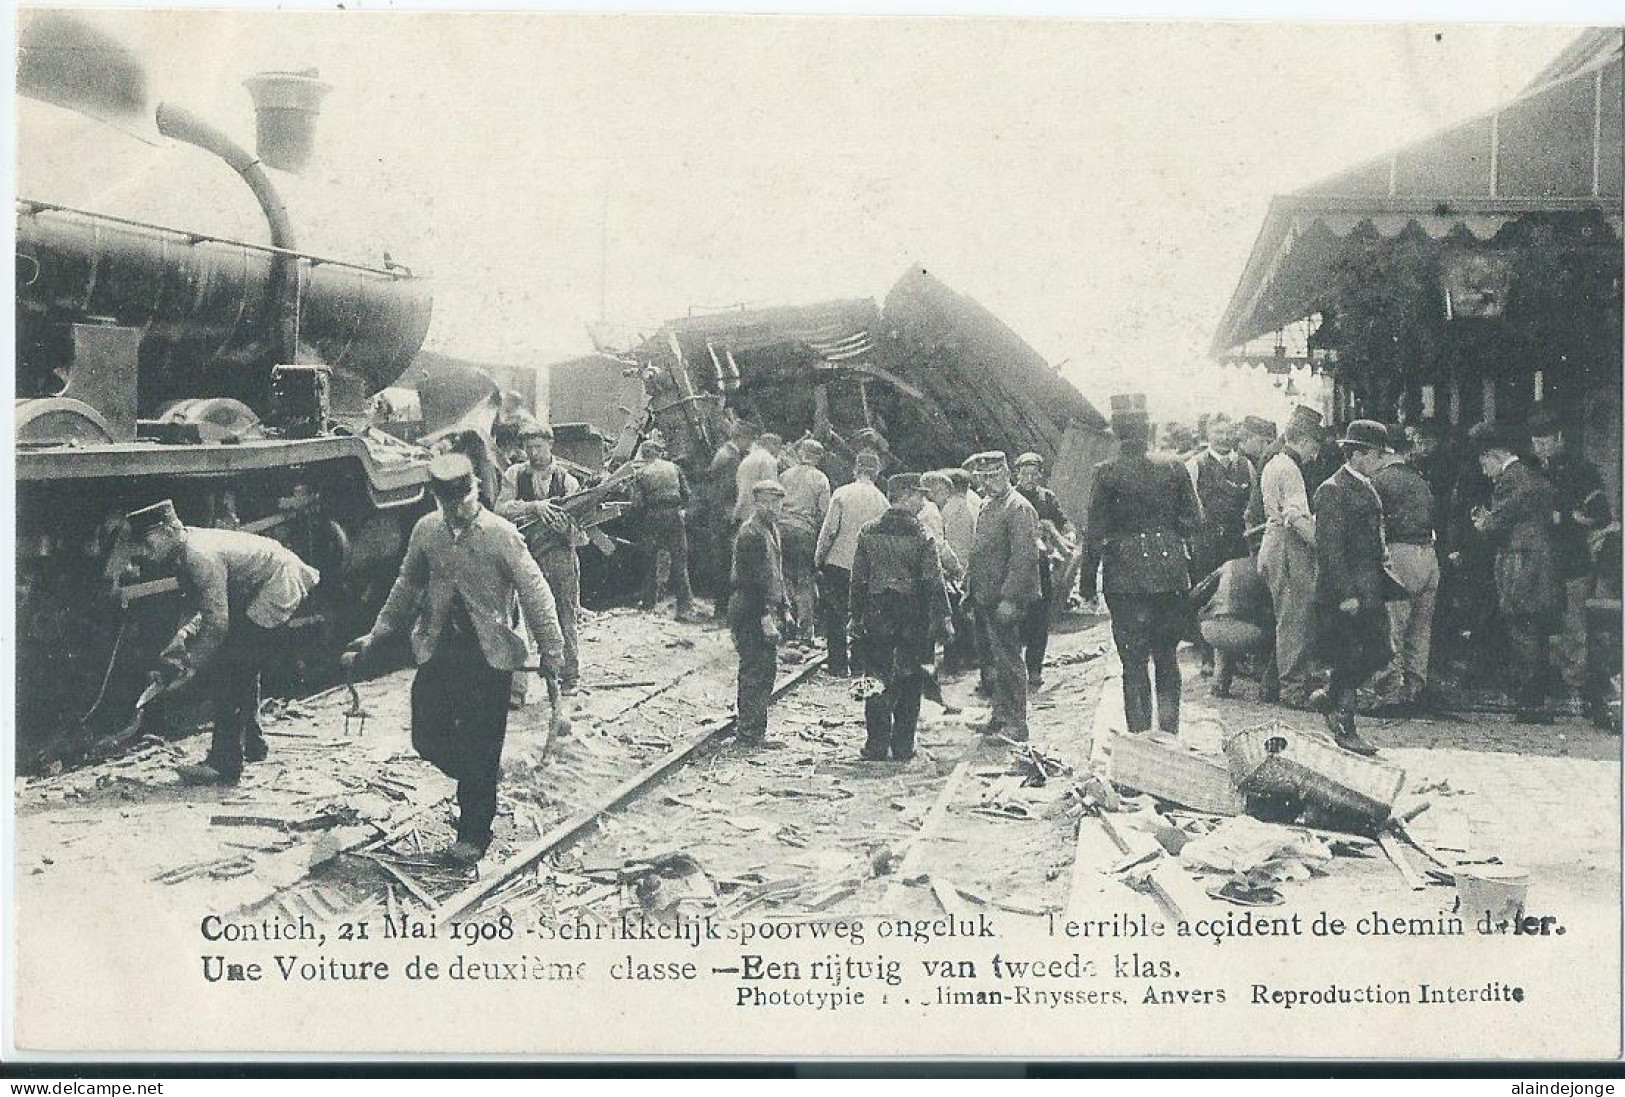 Kontich - Contich - Schrikkelijk Spoorweg Ongeluk - Een Rijtuig Van Tweede Klas - 21 Mai 1908 - Kontich